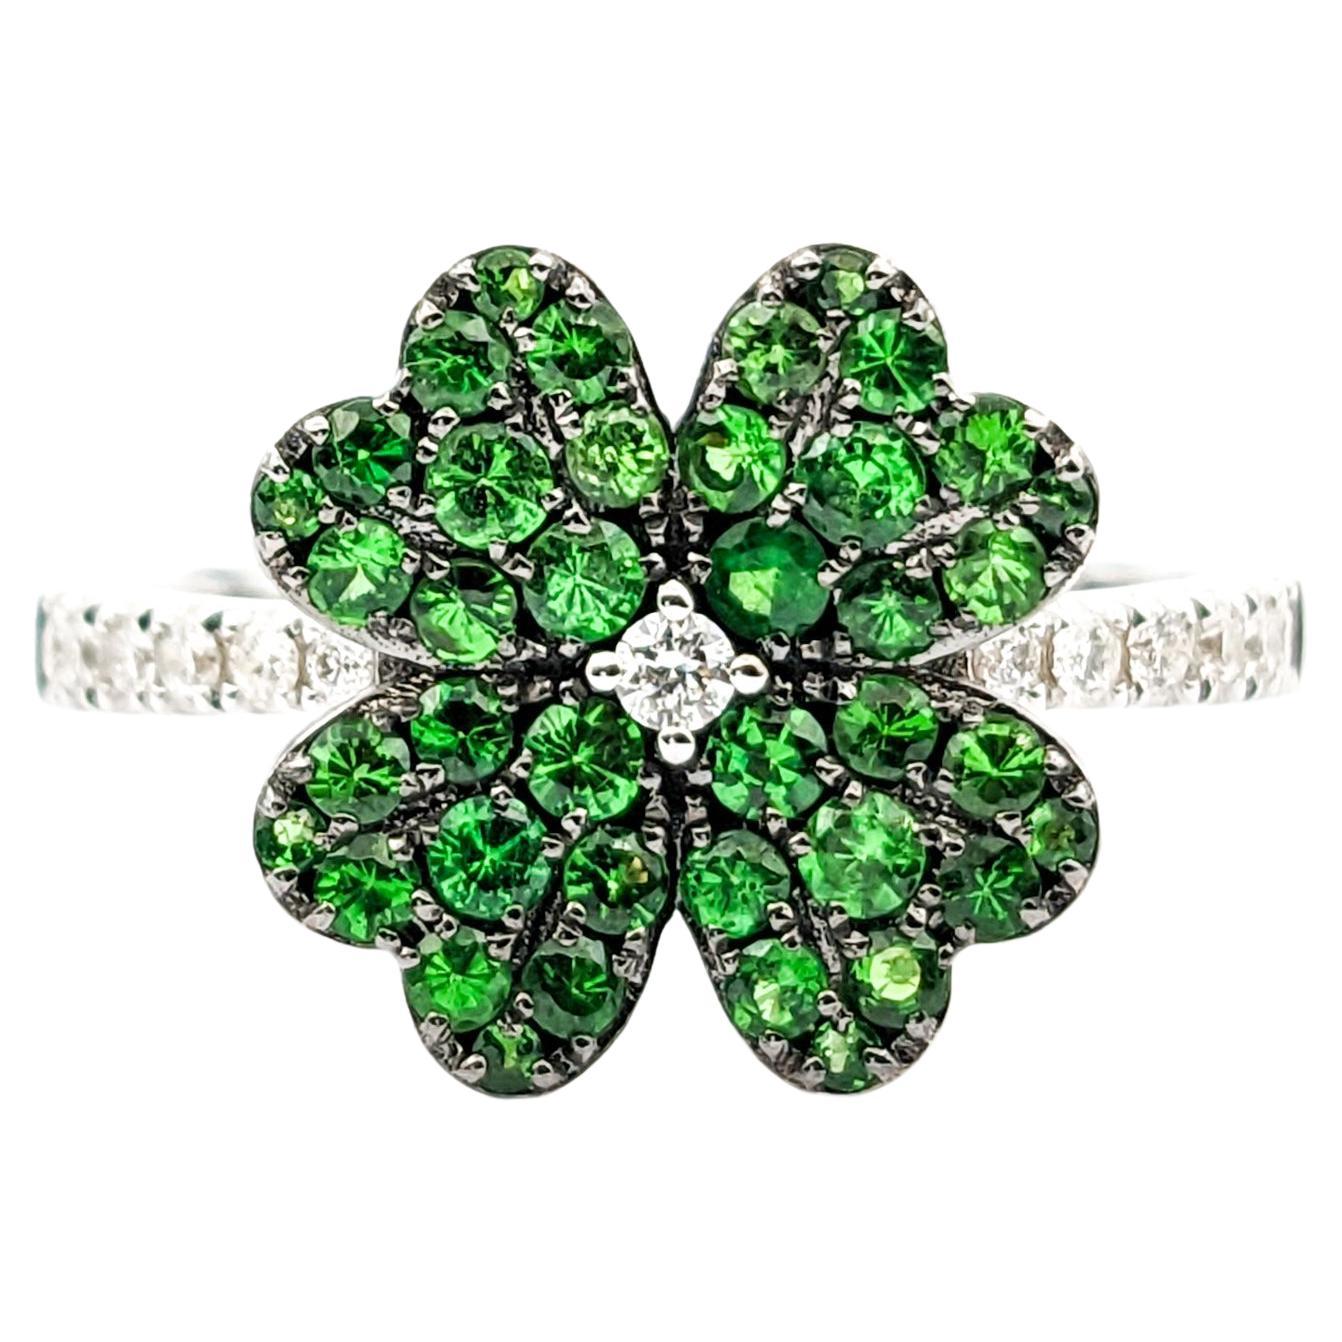 Four Leaf Clover Shamrock Ring with Tsavorite Garnets & Diamonds in 14kt White G For Sale